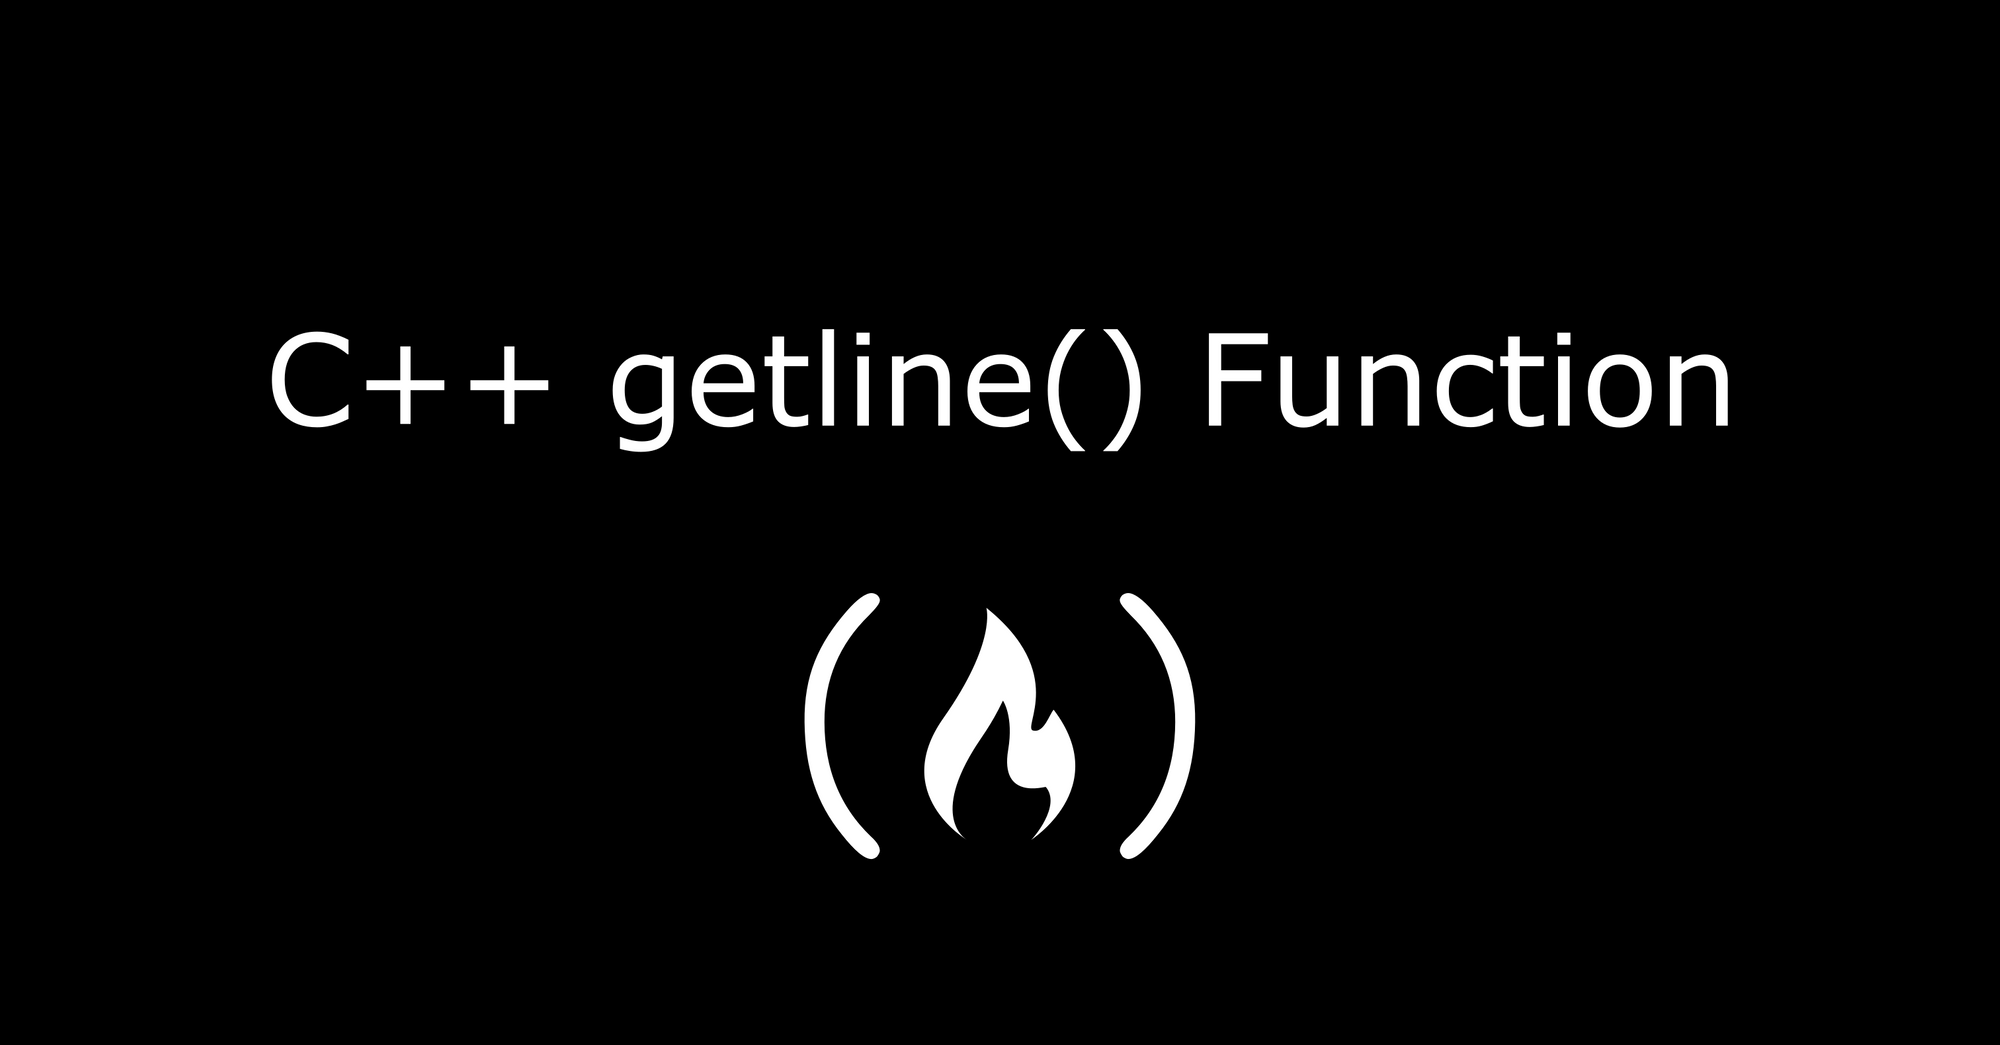 Getline en C++ - Ejemplo con función getline()